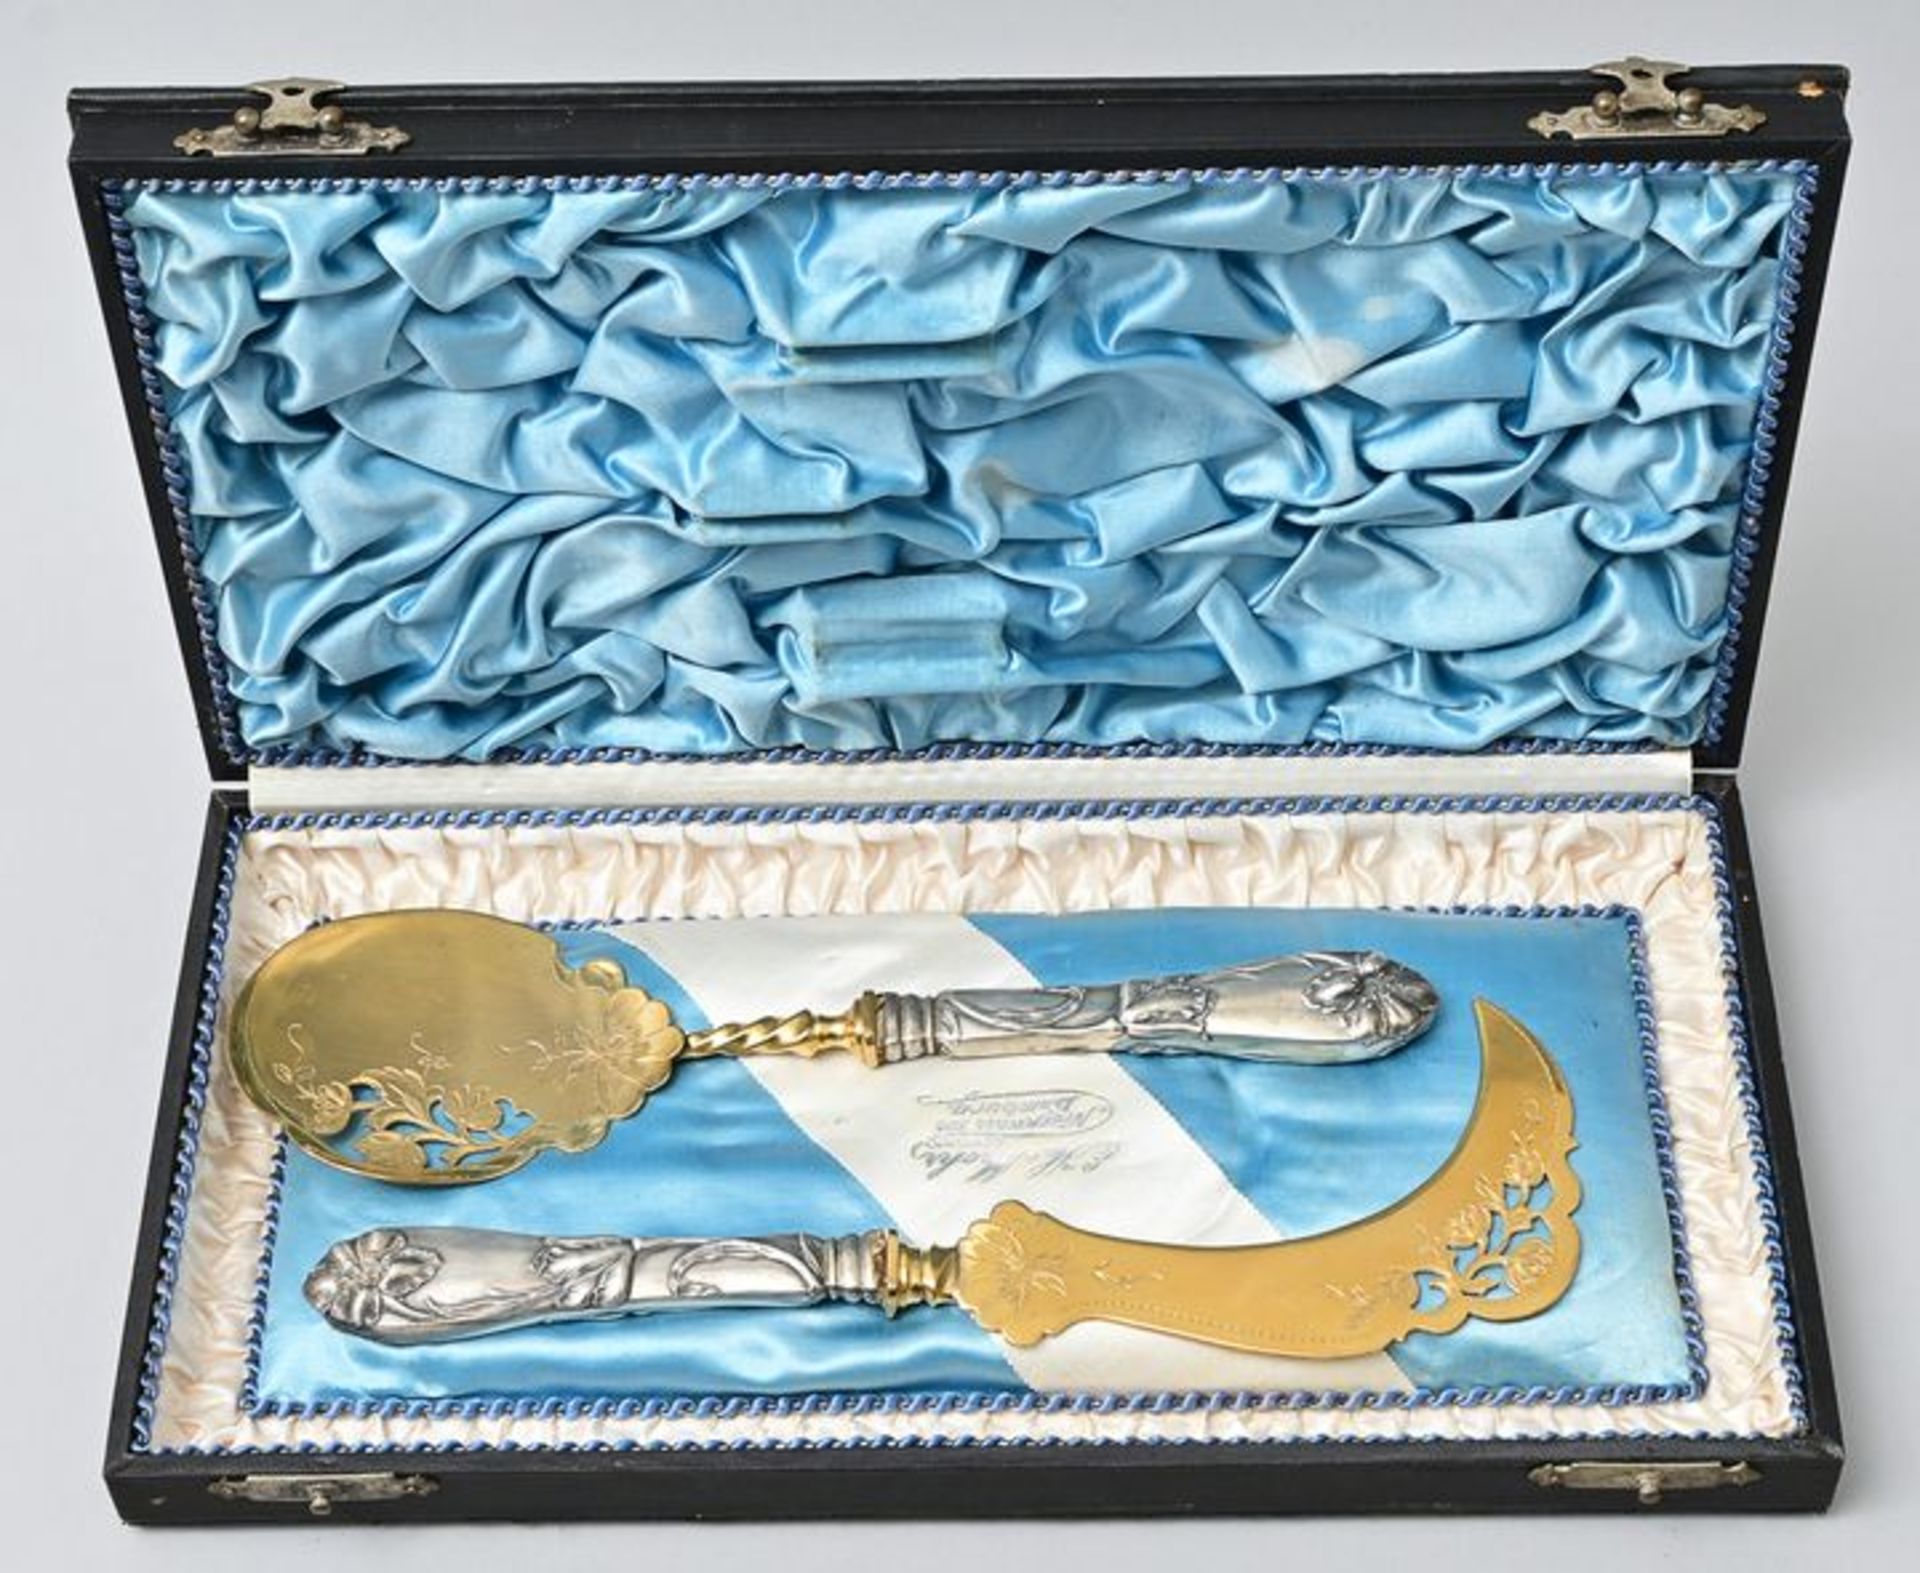 Jugendstil-Eis-Servierbesteck/ art nouveau cutlery - Image 2 of 3